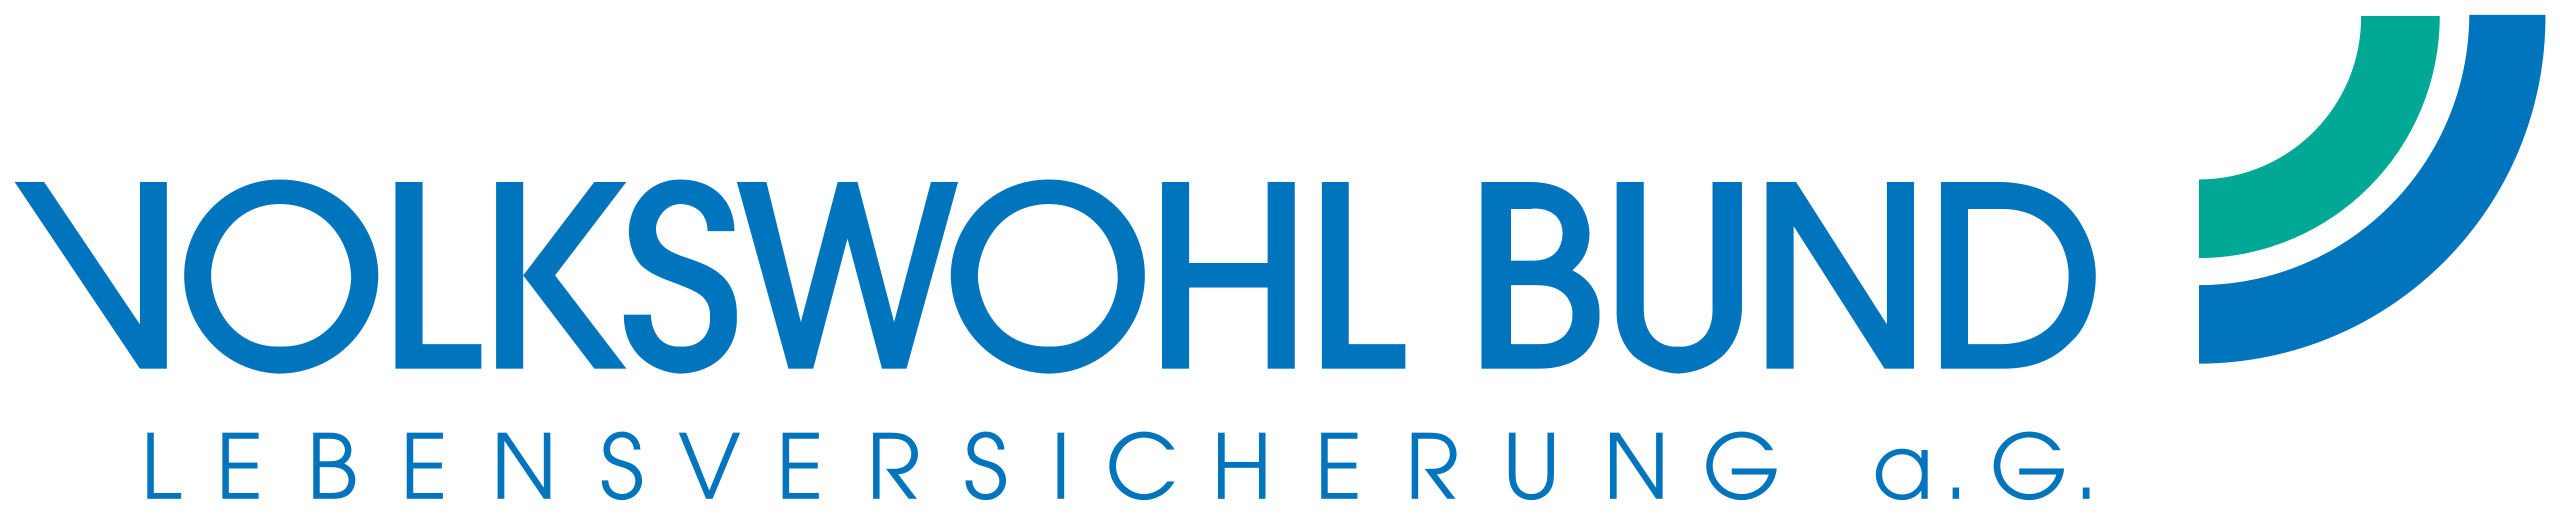 Volkswohl_Bund-Lebensversicherung_logo.svg_Gesundheitsmanagement